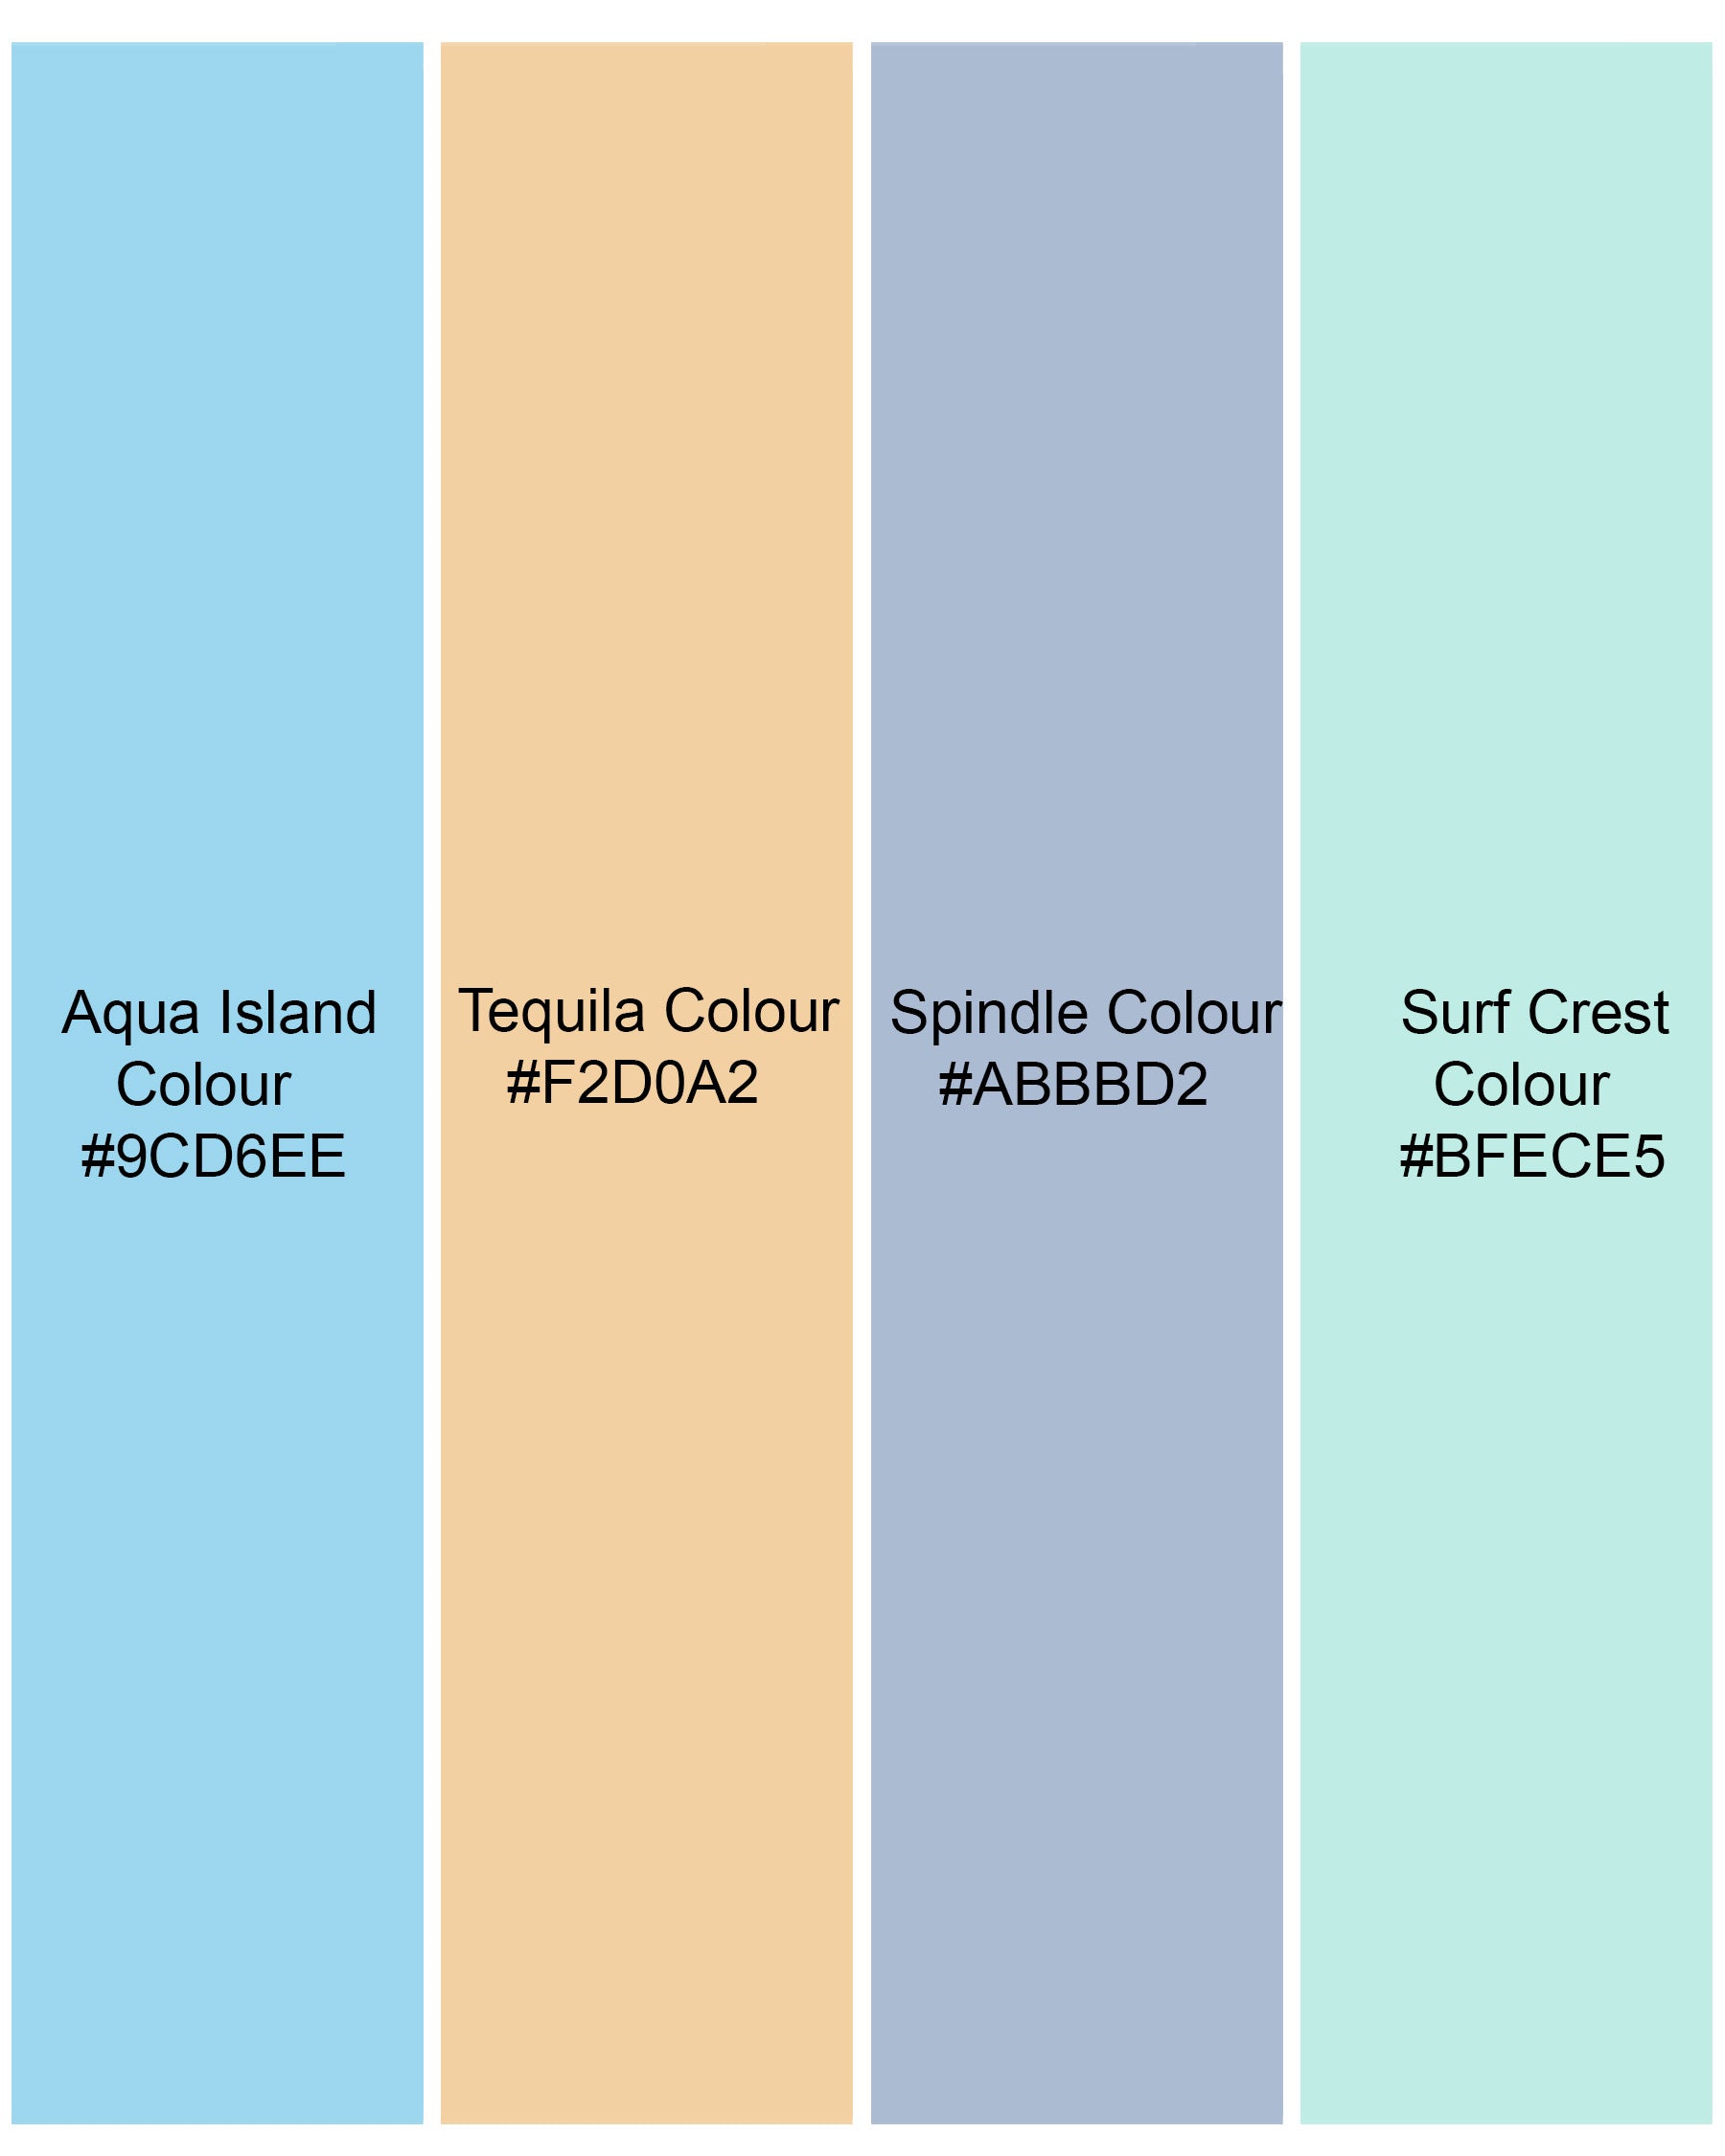 Aqua Island Blue and Surf Crest Green Polka Dotted Premium Tencel Kurta Shirt 7914-KS -38,7914-KS -H-38,7914-KS -39,7914-KS -H-39,7914-KS -40,7914-KS -H-40,7914-KS -42,7914-KS -H-42,7914-KS -44,7914-KS -H-44,7914-KS -46,7914-KS -H-46,7914-KS -48,7914-KS -H-48,7914-KS -50,7914-KS -H-50,7914-KS -52,7914-KS -H-52